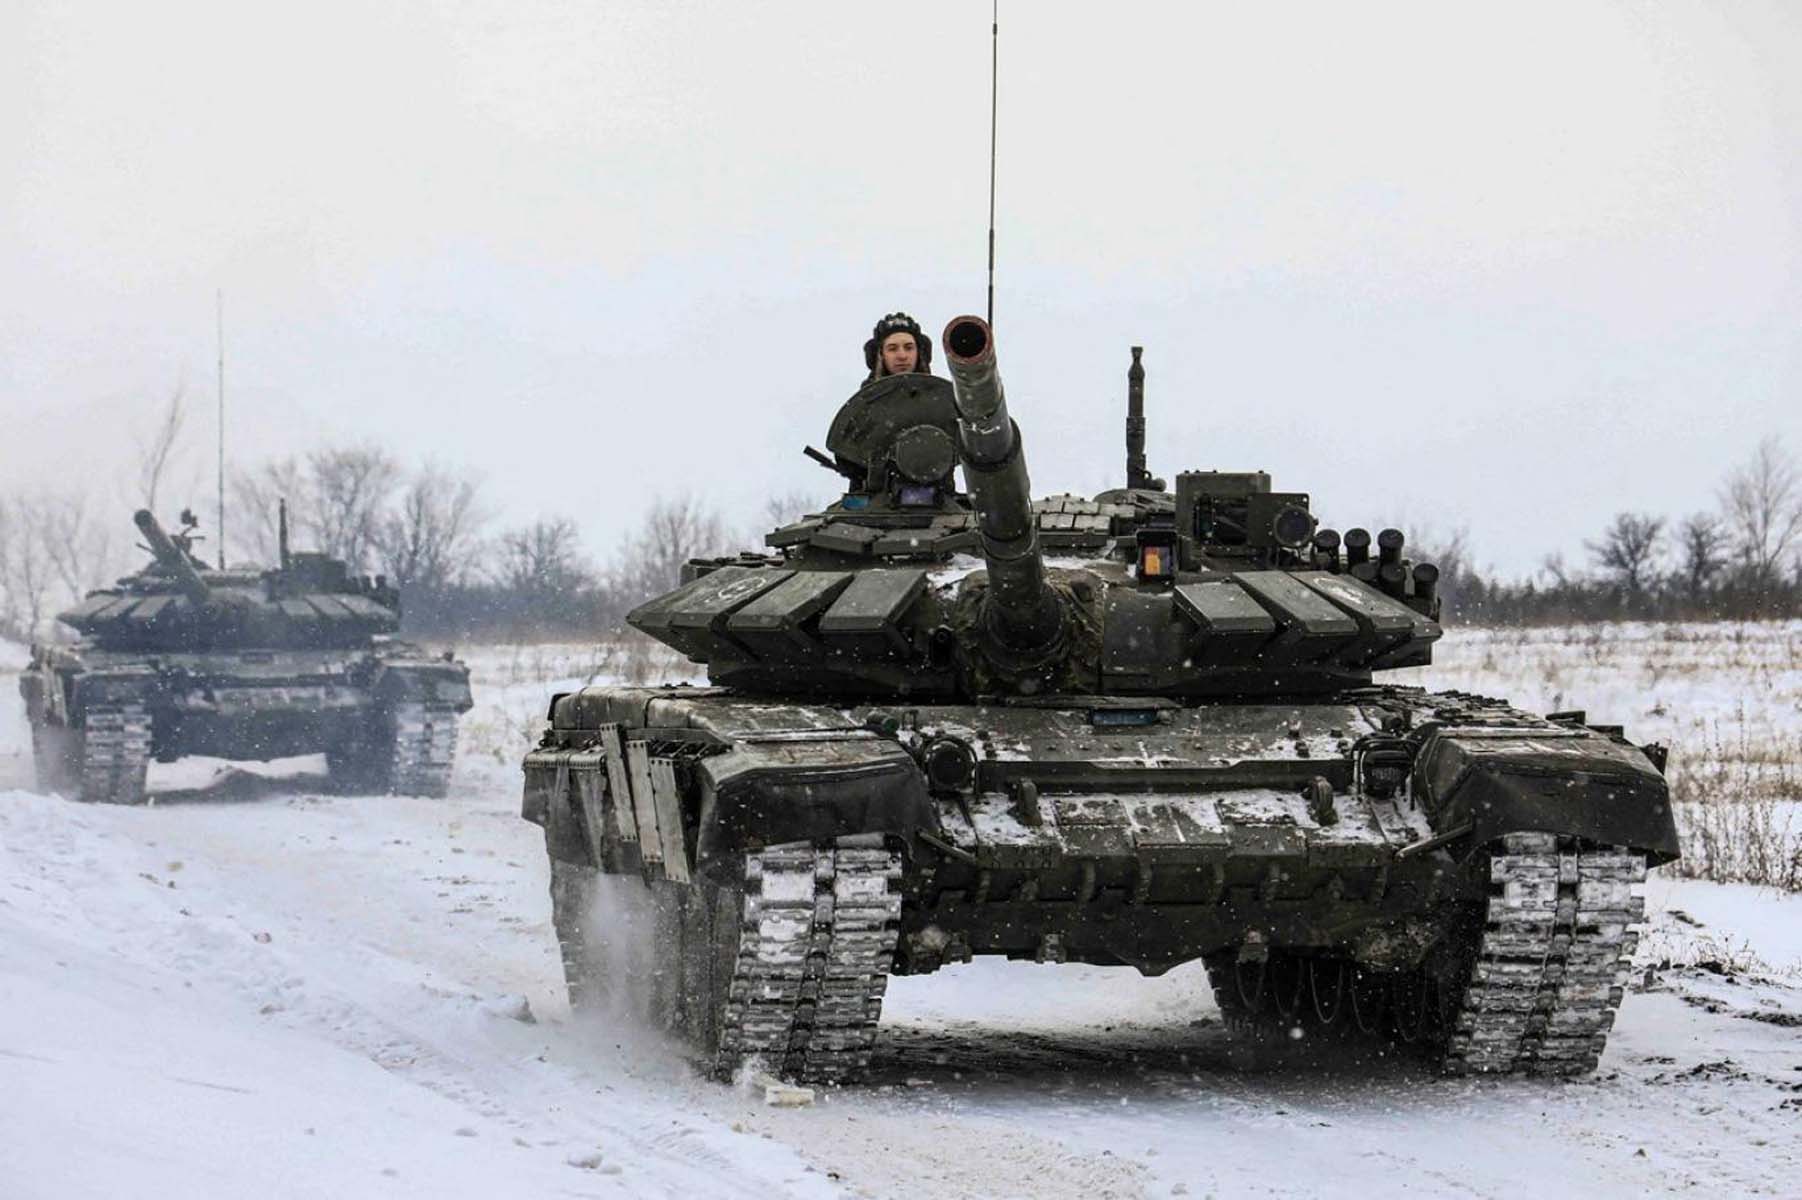 Rusya, Ukrayna'ya neden saldırıyor? Rusya - Ukrayna savaşı başladı mı? Savaş mı çıktı son dakika 2022? 